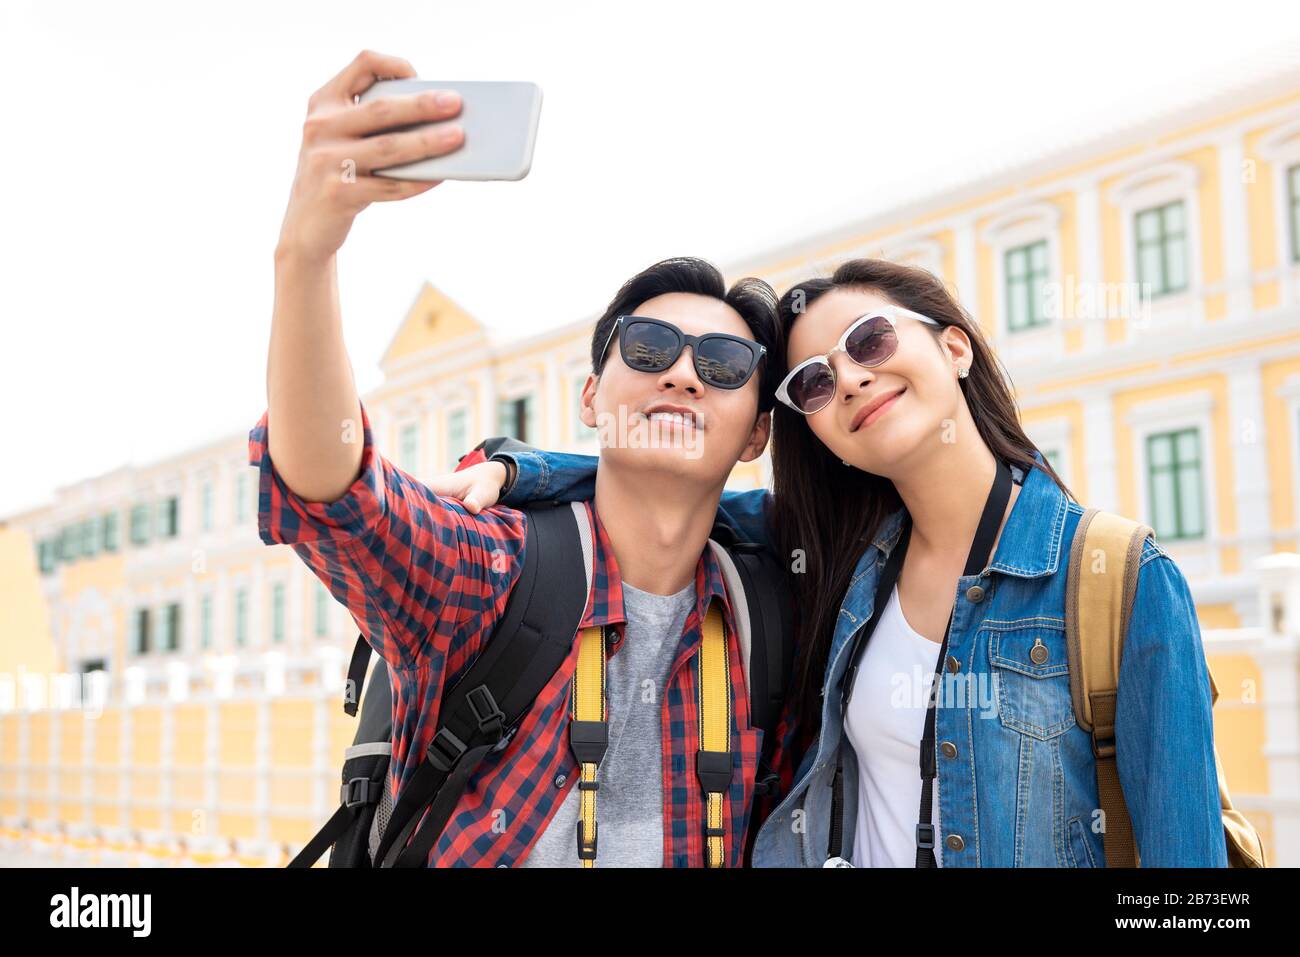 Portrait des jungen, glücklichen asiatischen Touristenpaares in legerer Kleidung, die während der Reise in Bangkok Thailand selfie mitnimmt Stockfoto